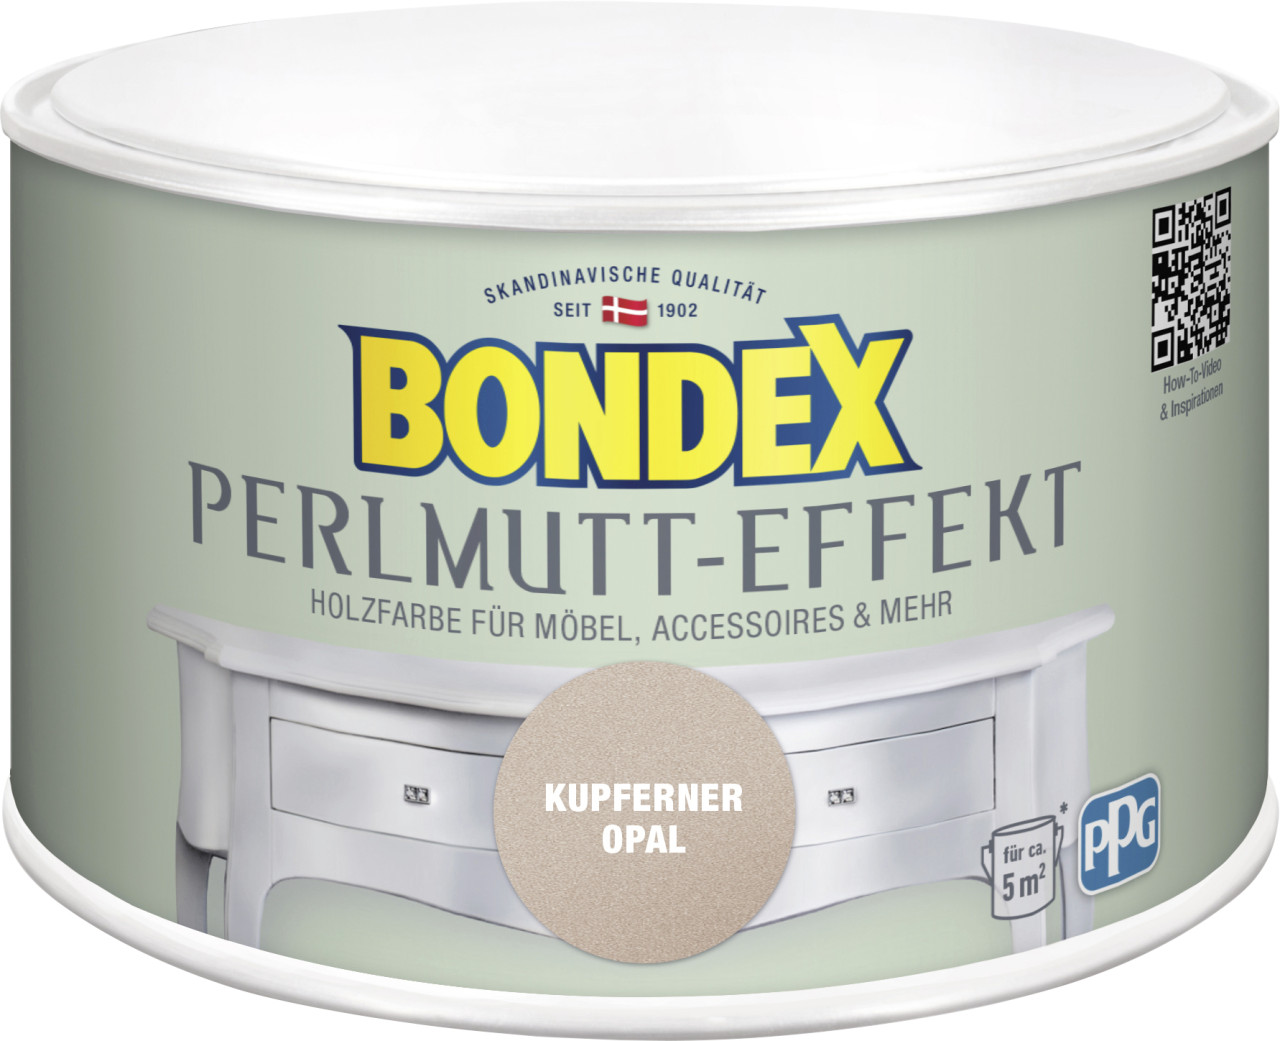 Bondex Holzfarbe Perlmutt-Effekt 500 ml kupferner opal GLO765153145